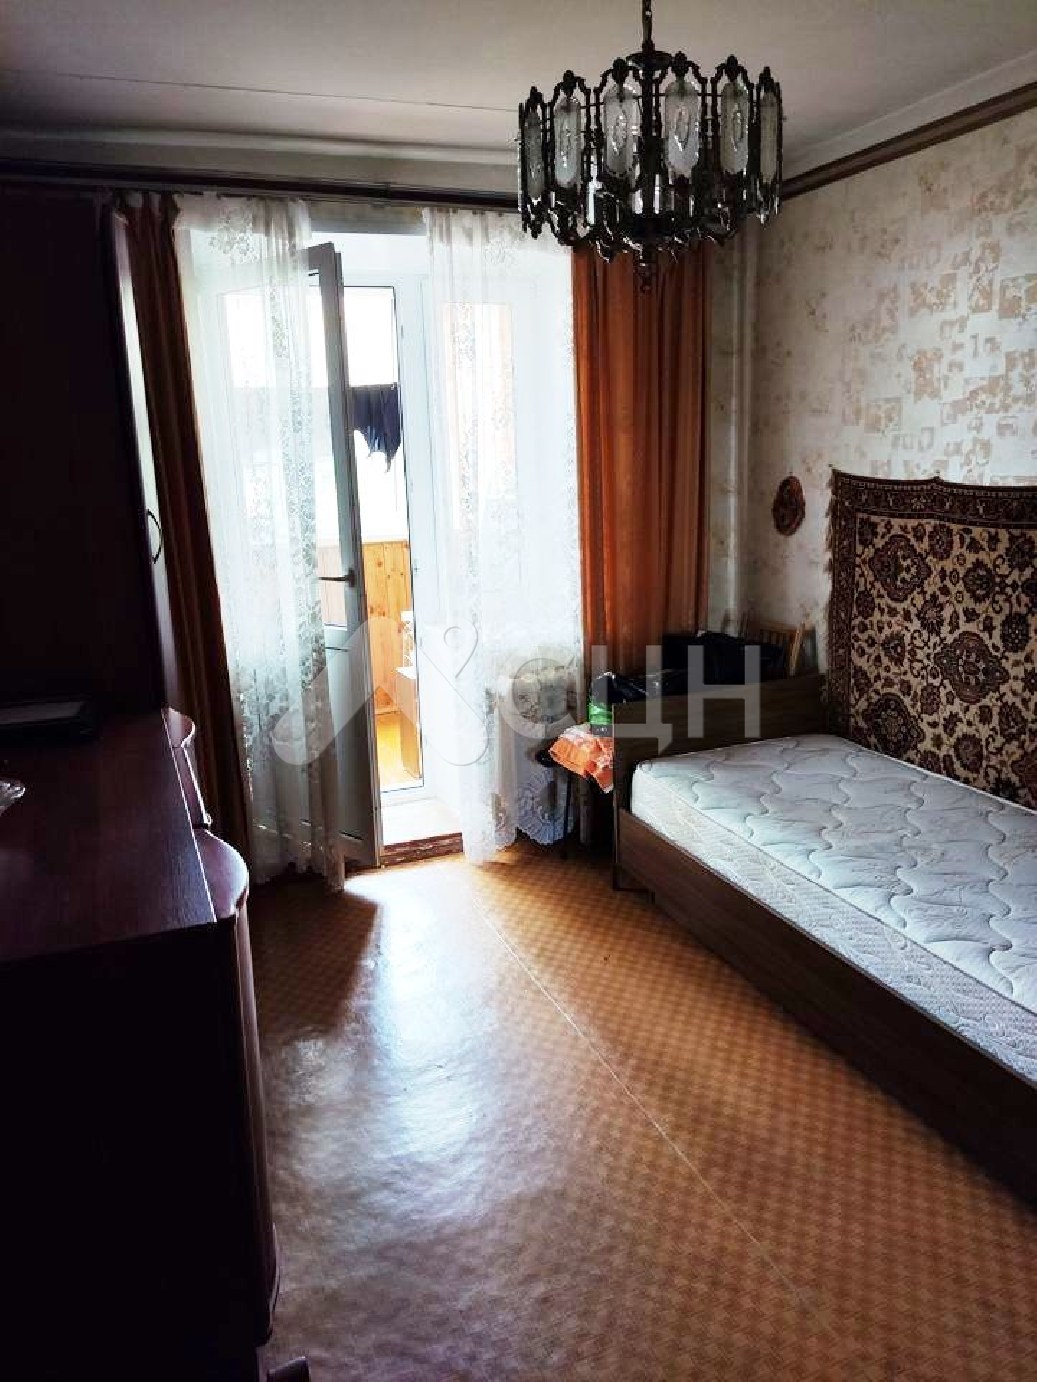 циан саров квартиры
: Г. Саров, улица Некрасова, 11, 3-комн квартира, этаж 2 из 9, продажа.